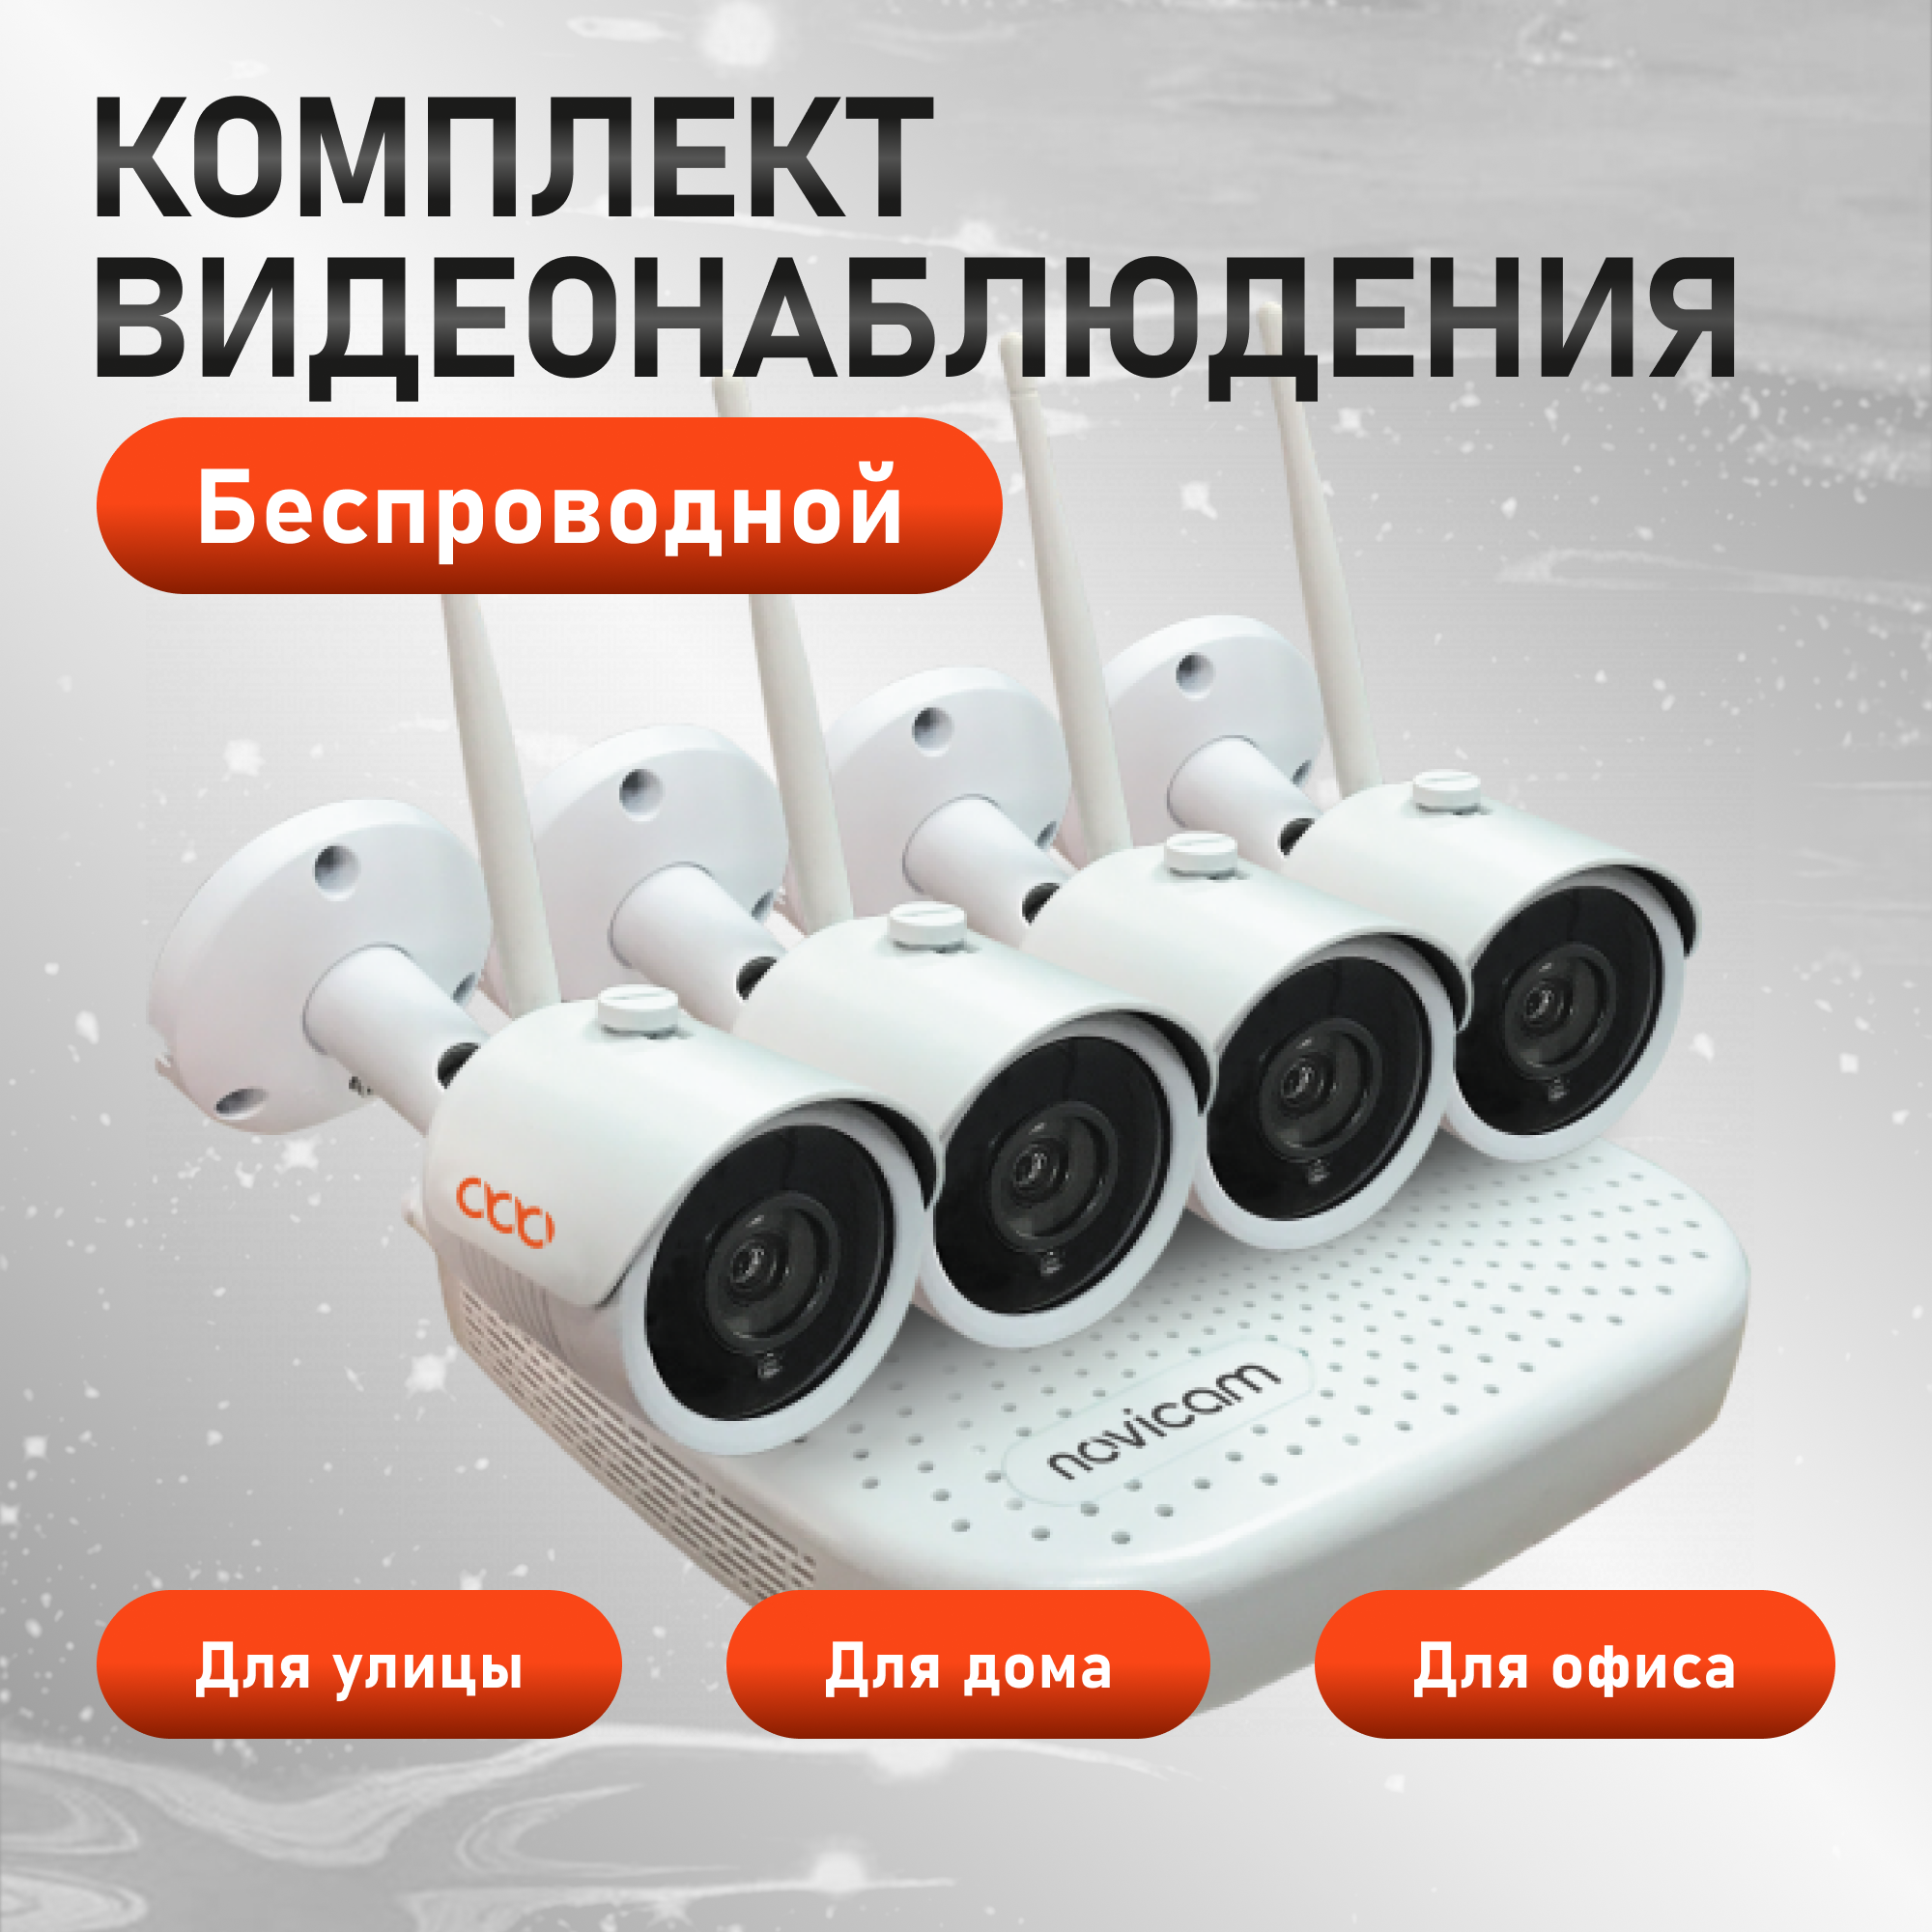 Комплект видеонаблюдения Novicam WIFI KIT 1204 с 4 камерами для квартиры, дома, офиса удлинитель сетевой progix 2 розетки 2 метра с заземлением для дома и офиса